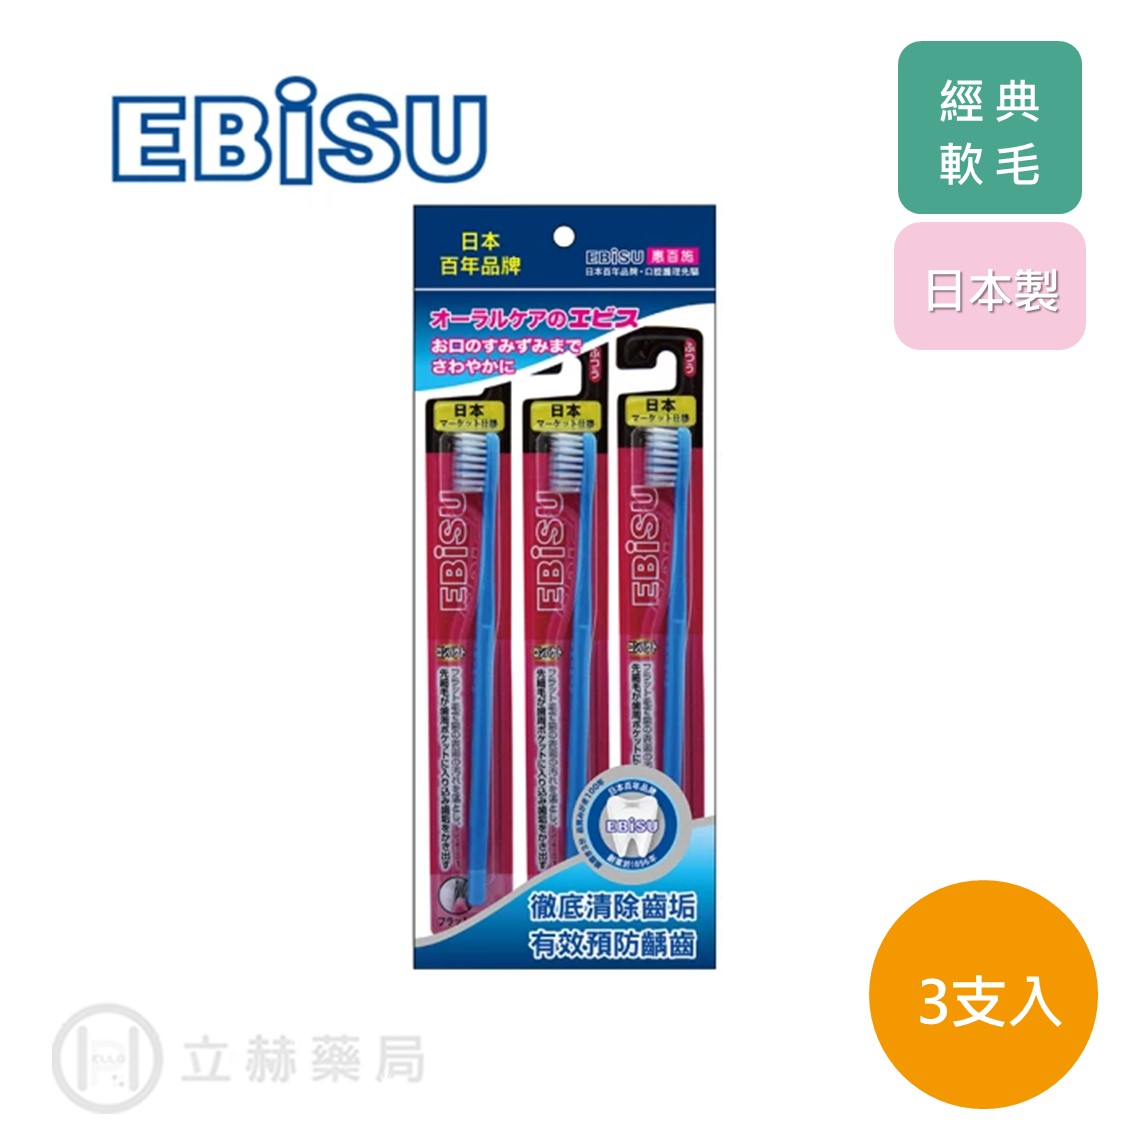 日本 EBISU 惠比壽 經典軟毛牙刷3入 H-21S 牙齒清潔 軟毛 牙刷 公司貨【立赫藥局】